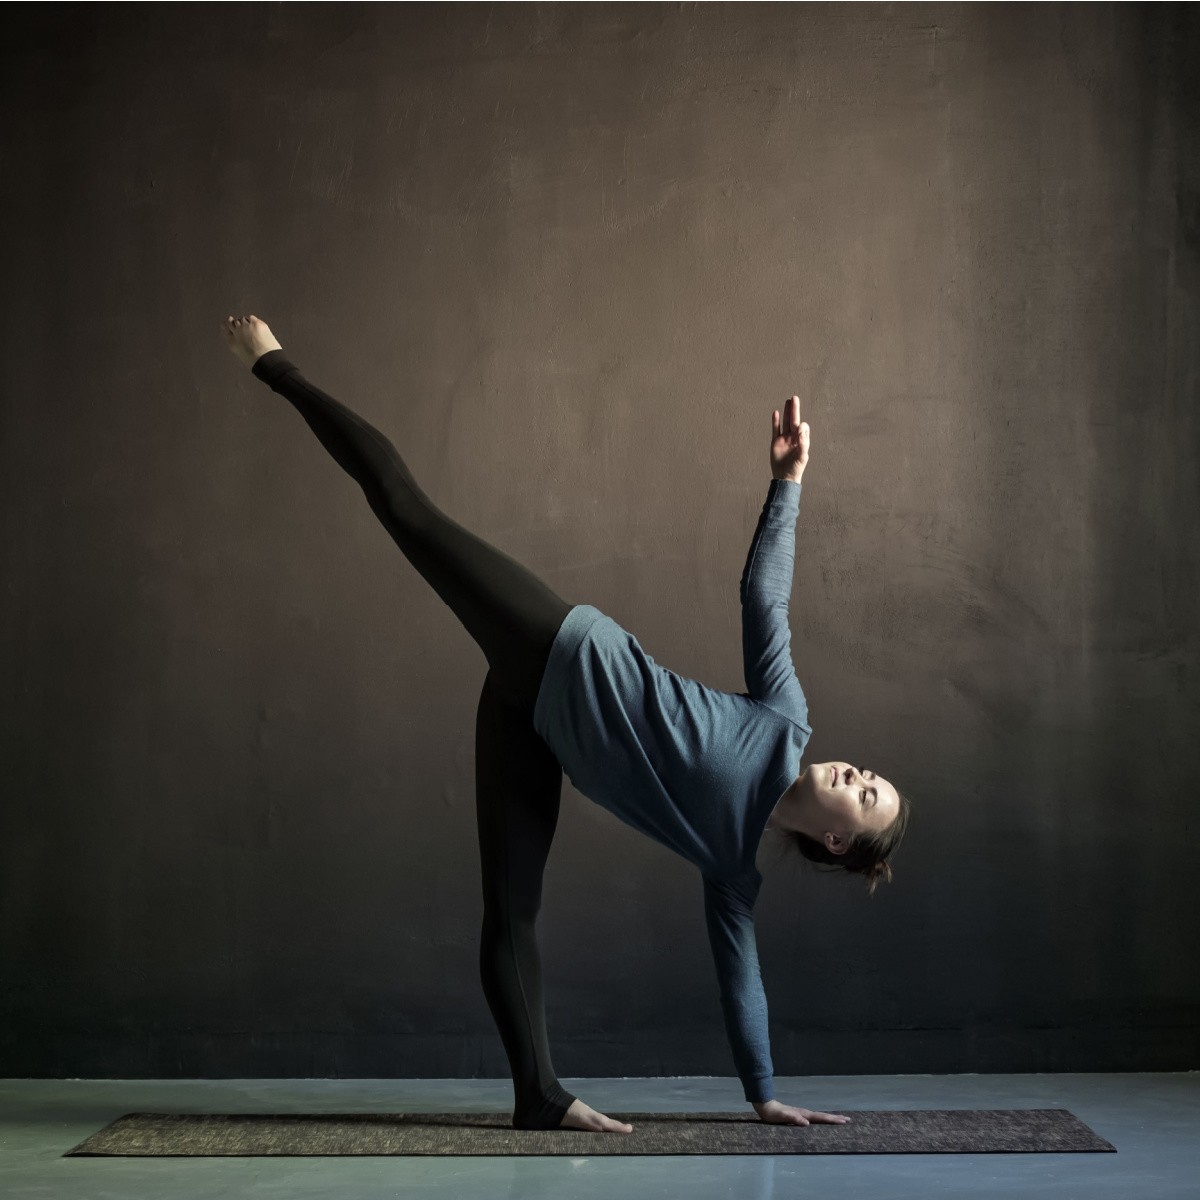 Chia sẻ 3 động tác yoga cơ bản cực dễ nhưng giúp nắn chỉnh dáng đẹp, cơ thể dẻo dai